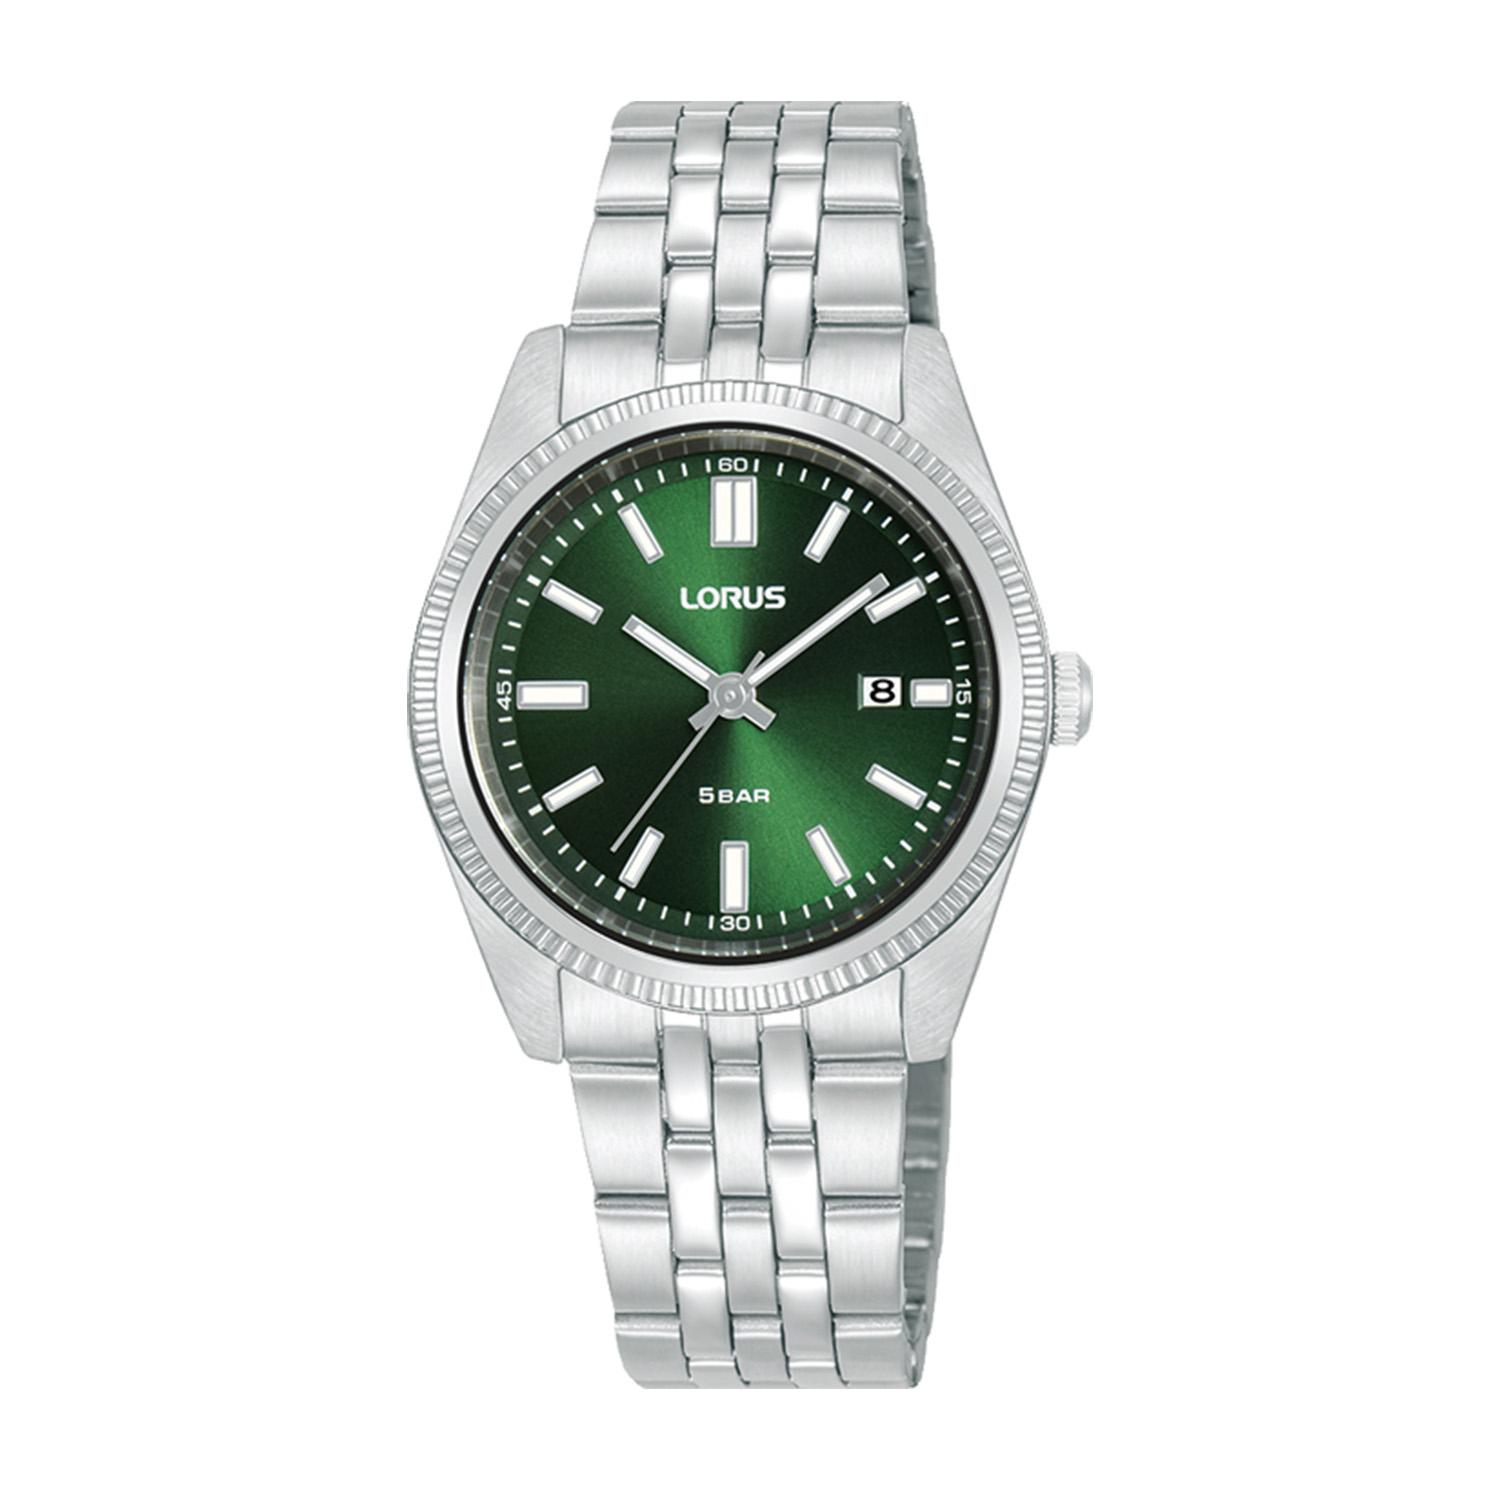 Γυναικείο ρολόι LORUS από ασημί ανοξείδωτο ατσάλι με πράσινο καντράν και μπρασελέ.